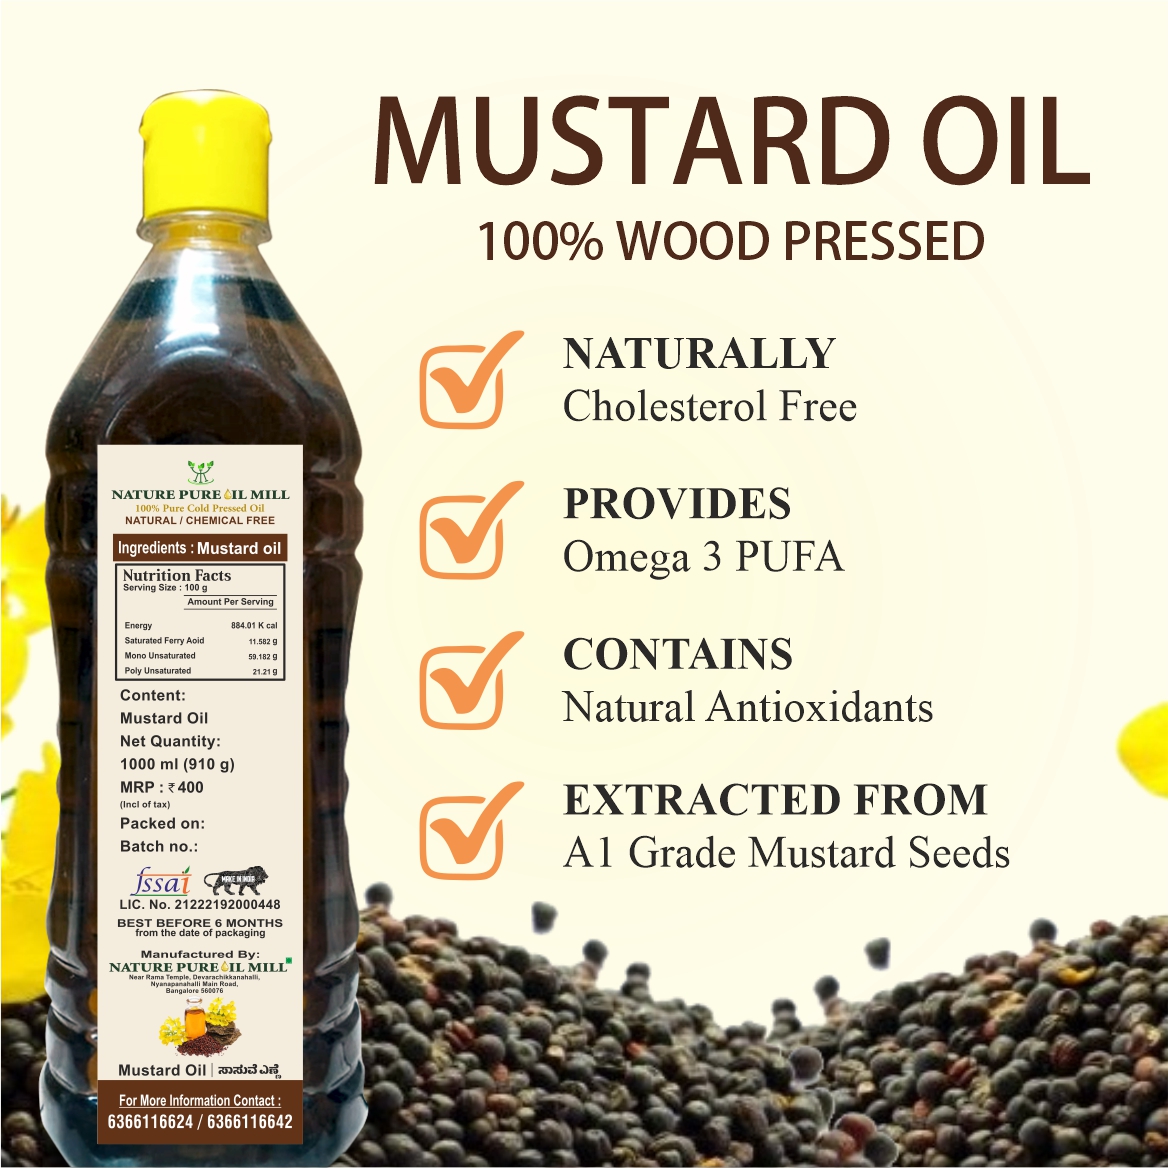 Mustard Oil - Nature Pure Oil Mill